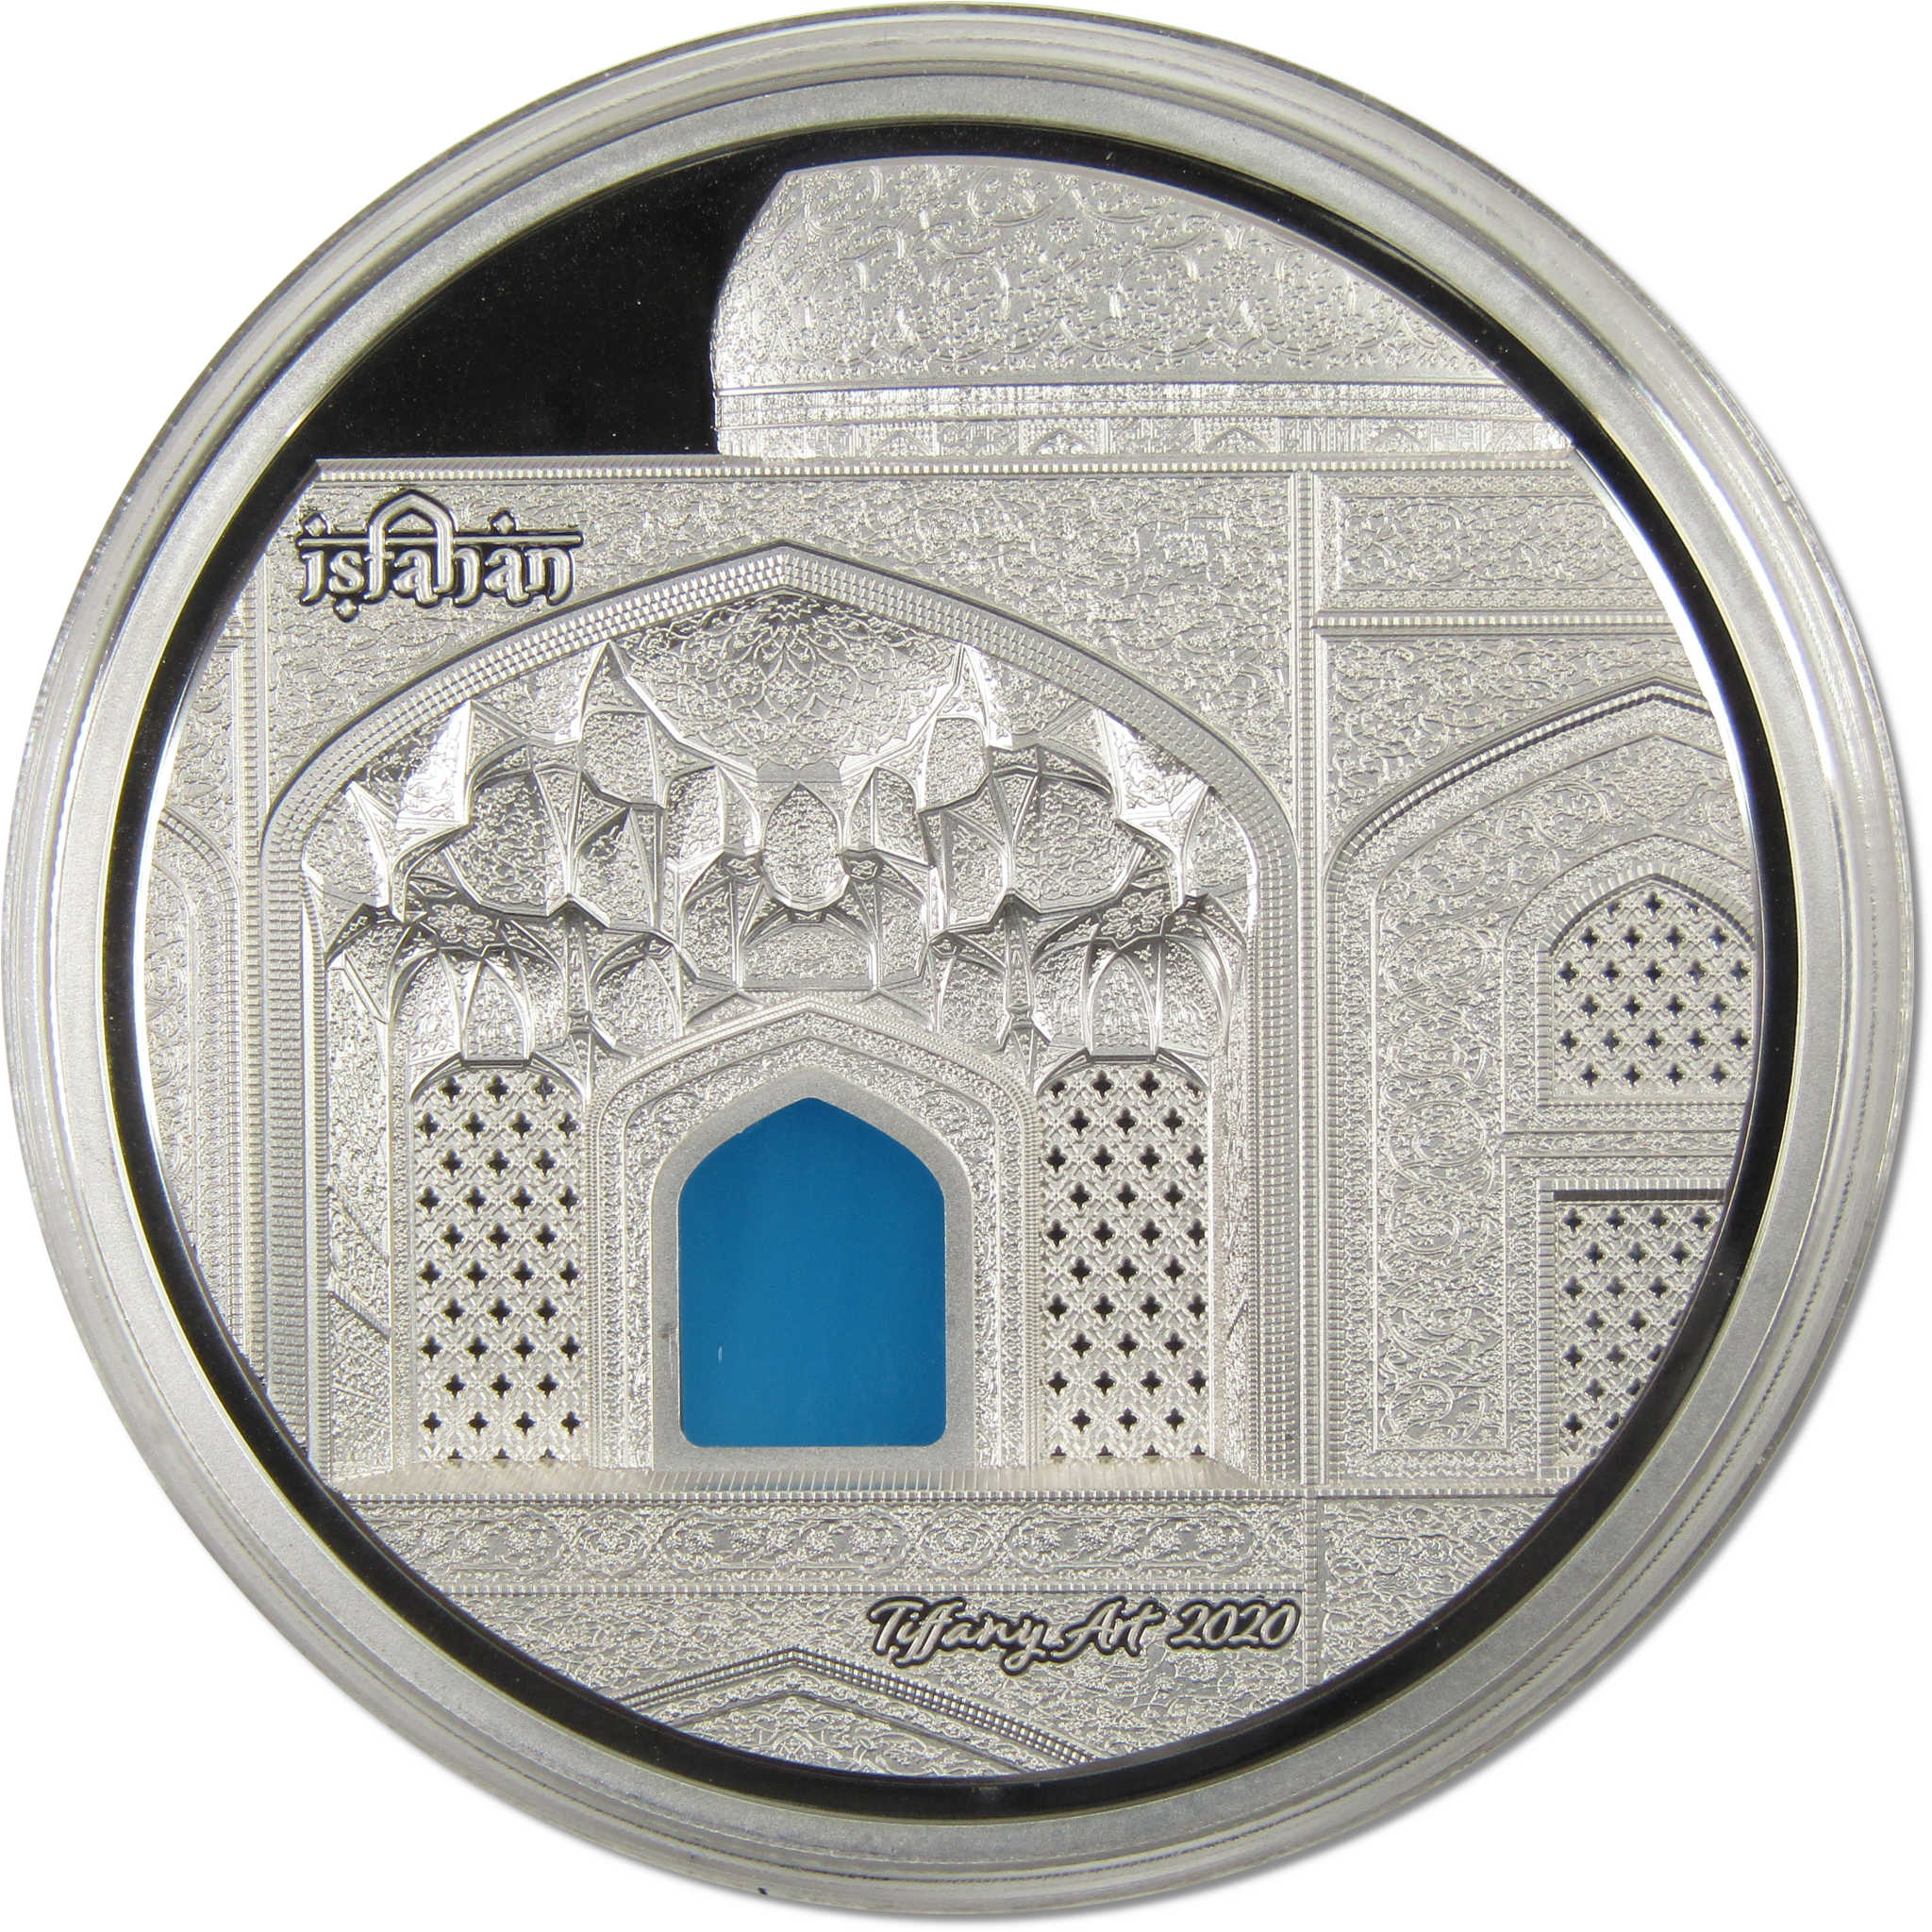 Tiffany Art Safavid 3 oz .999 Silver $20 Proof Coin 2020 Palau COA